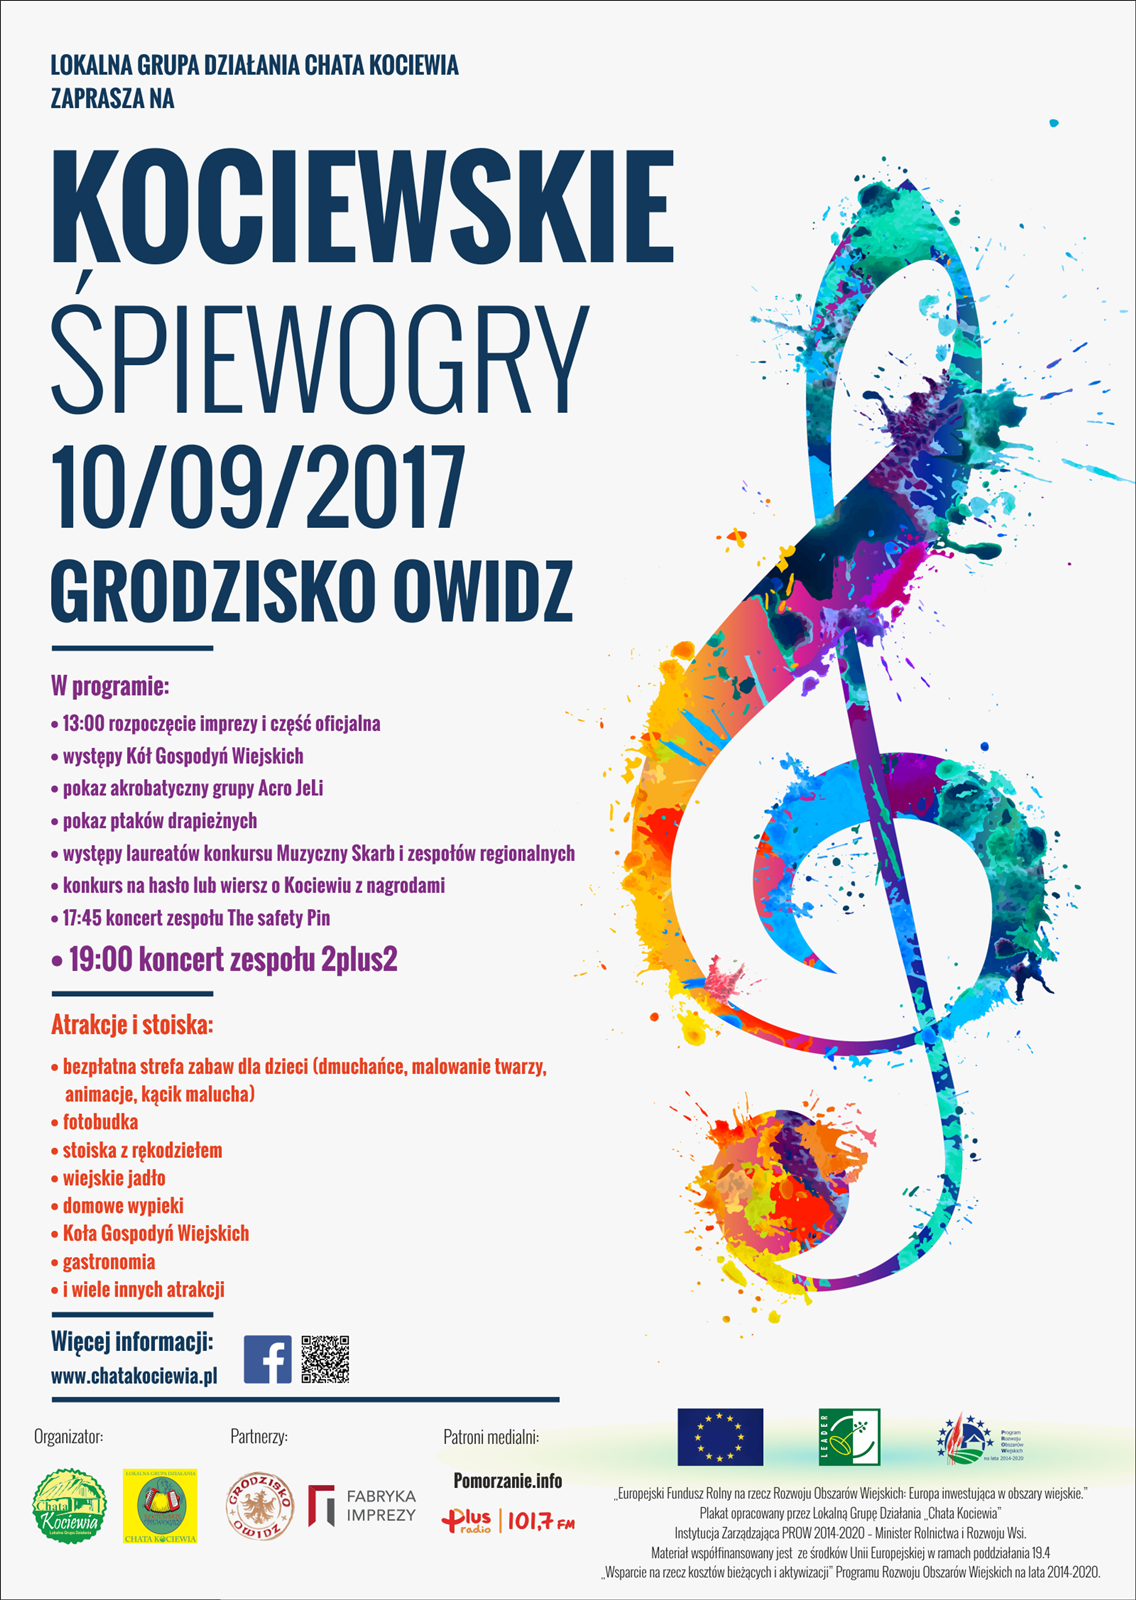 Kociewskie Śpiewogry – niedziela,10.09.2017 Grodzisko Owidz koło Starogardu Gdańskiego.